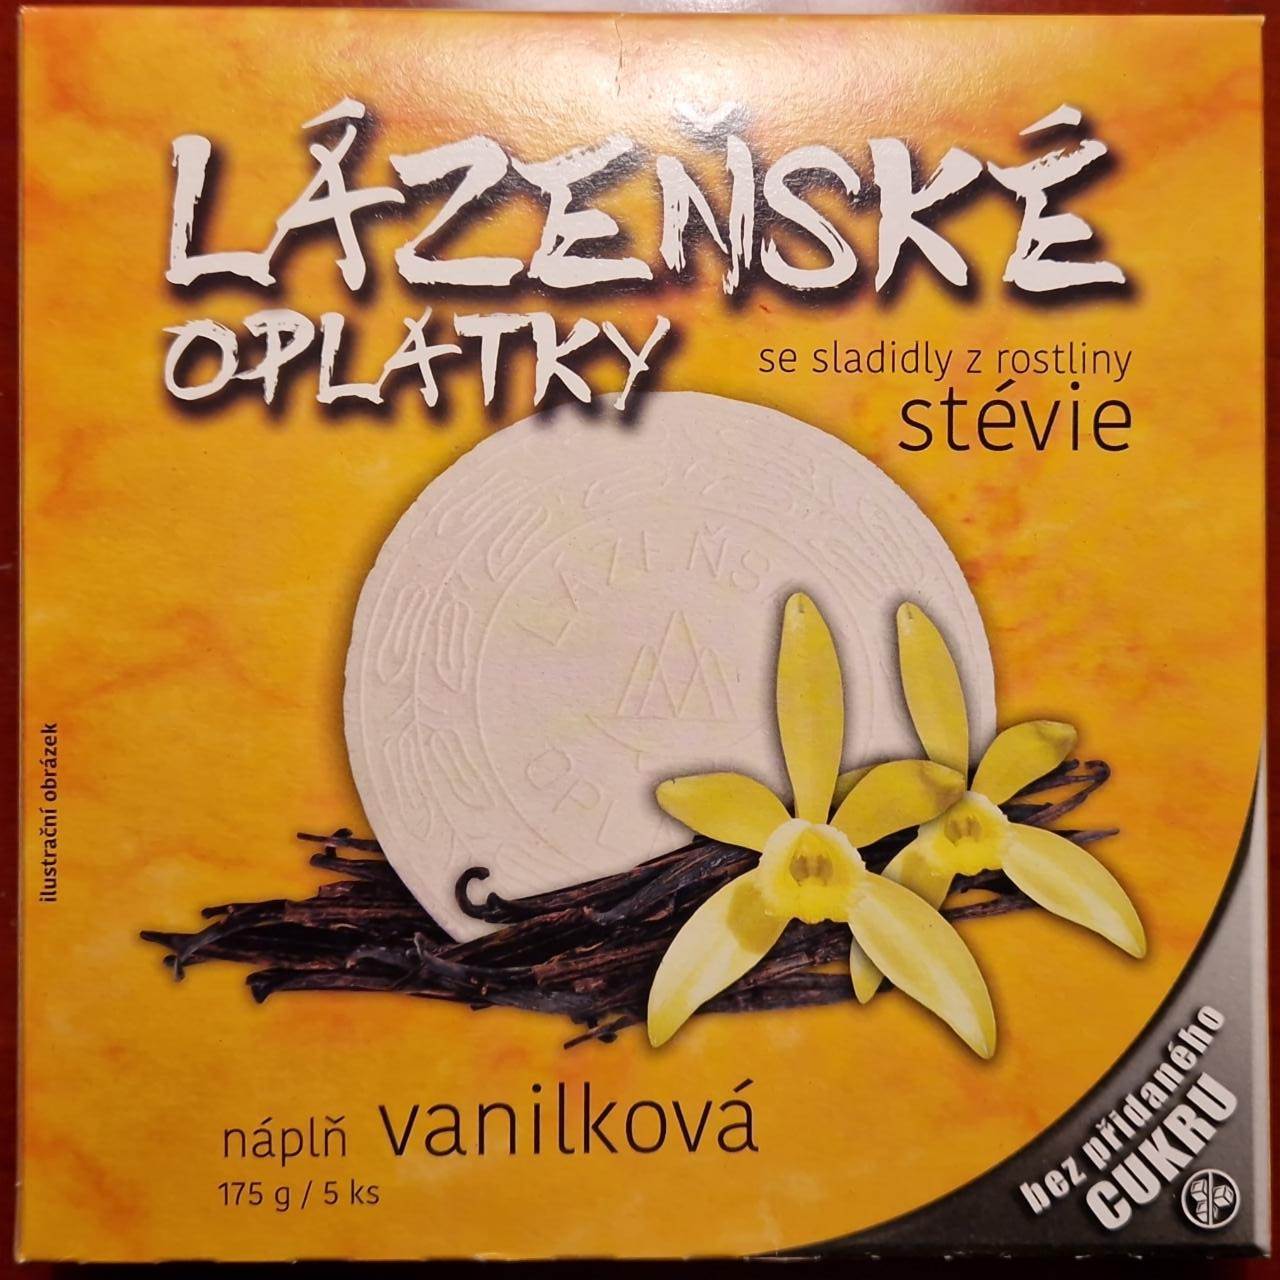 Fotografie - Lázeňské oplatky vanilková náplň se sladidly z rostliny stévie